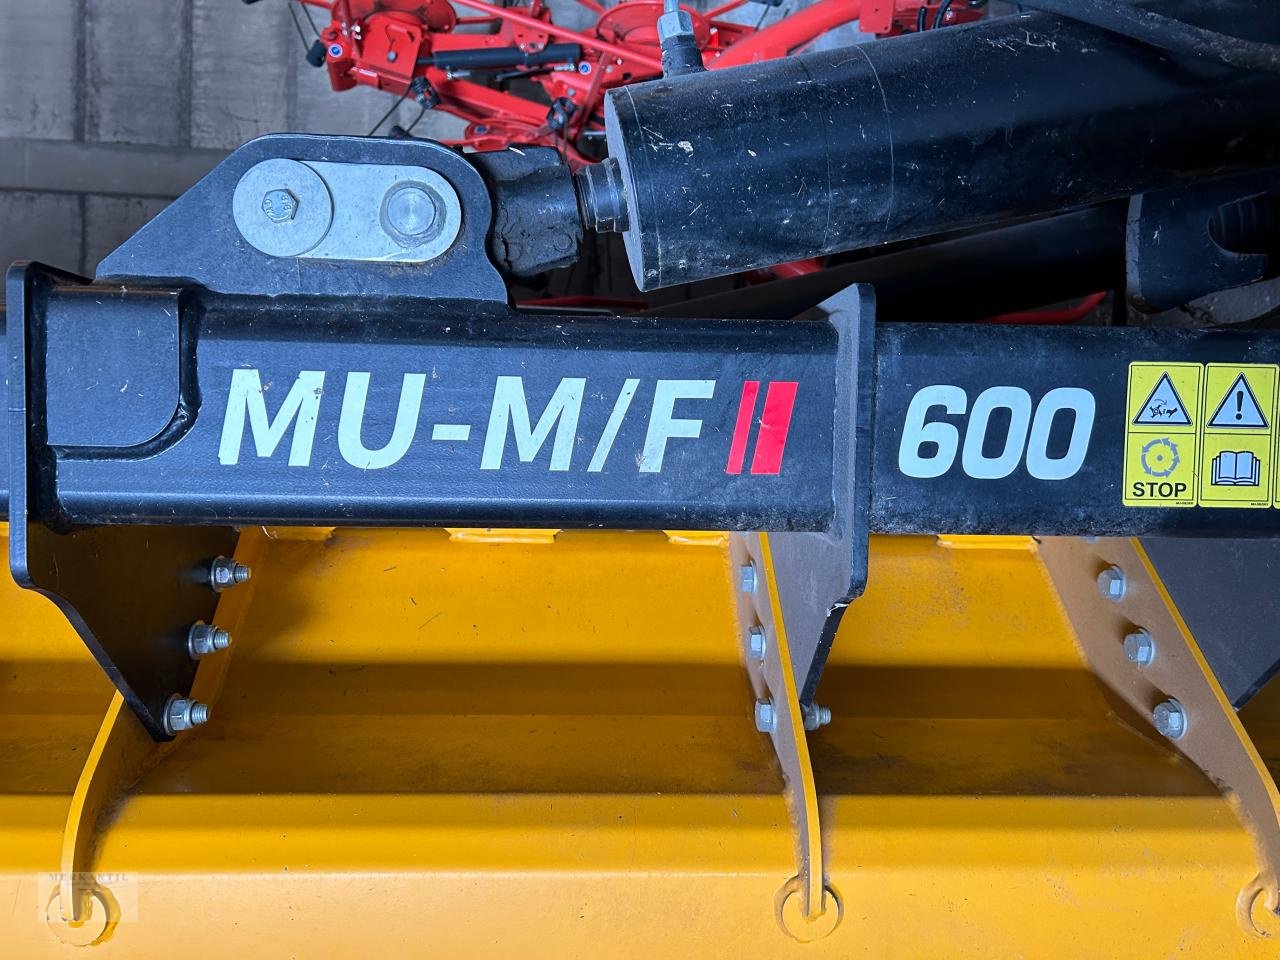 Mulcher des Typs Müthing MU-M/F II 600, Gebrauchtmaschine in Pragsdorf (Bild 2)